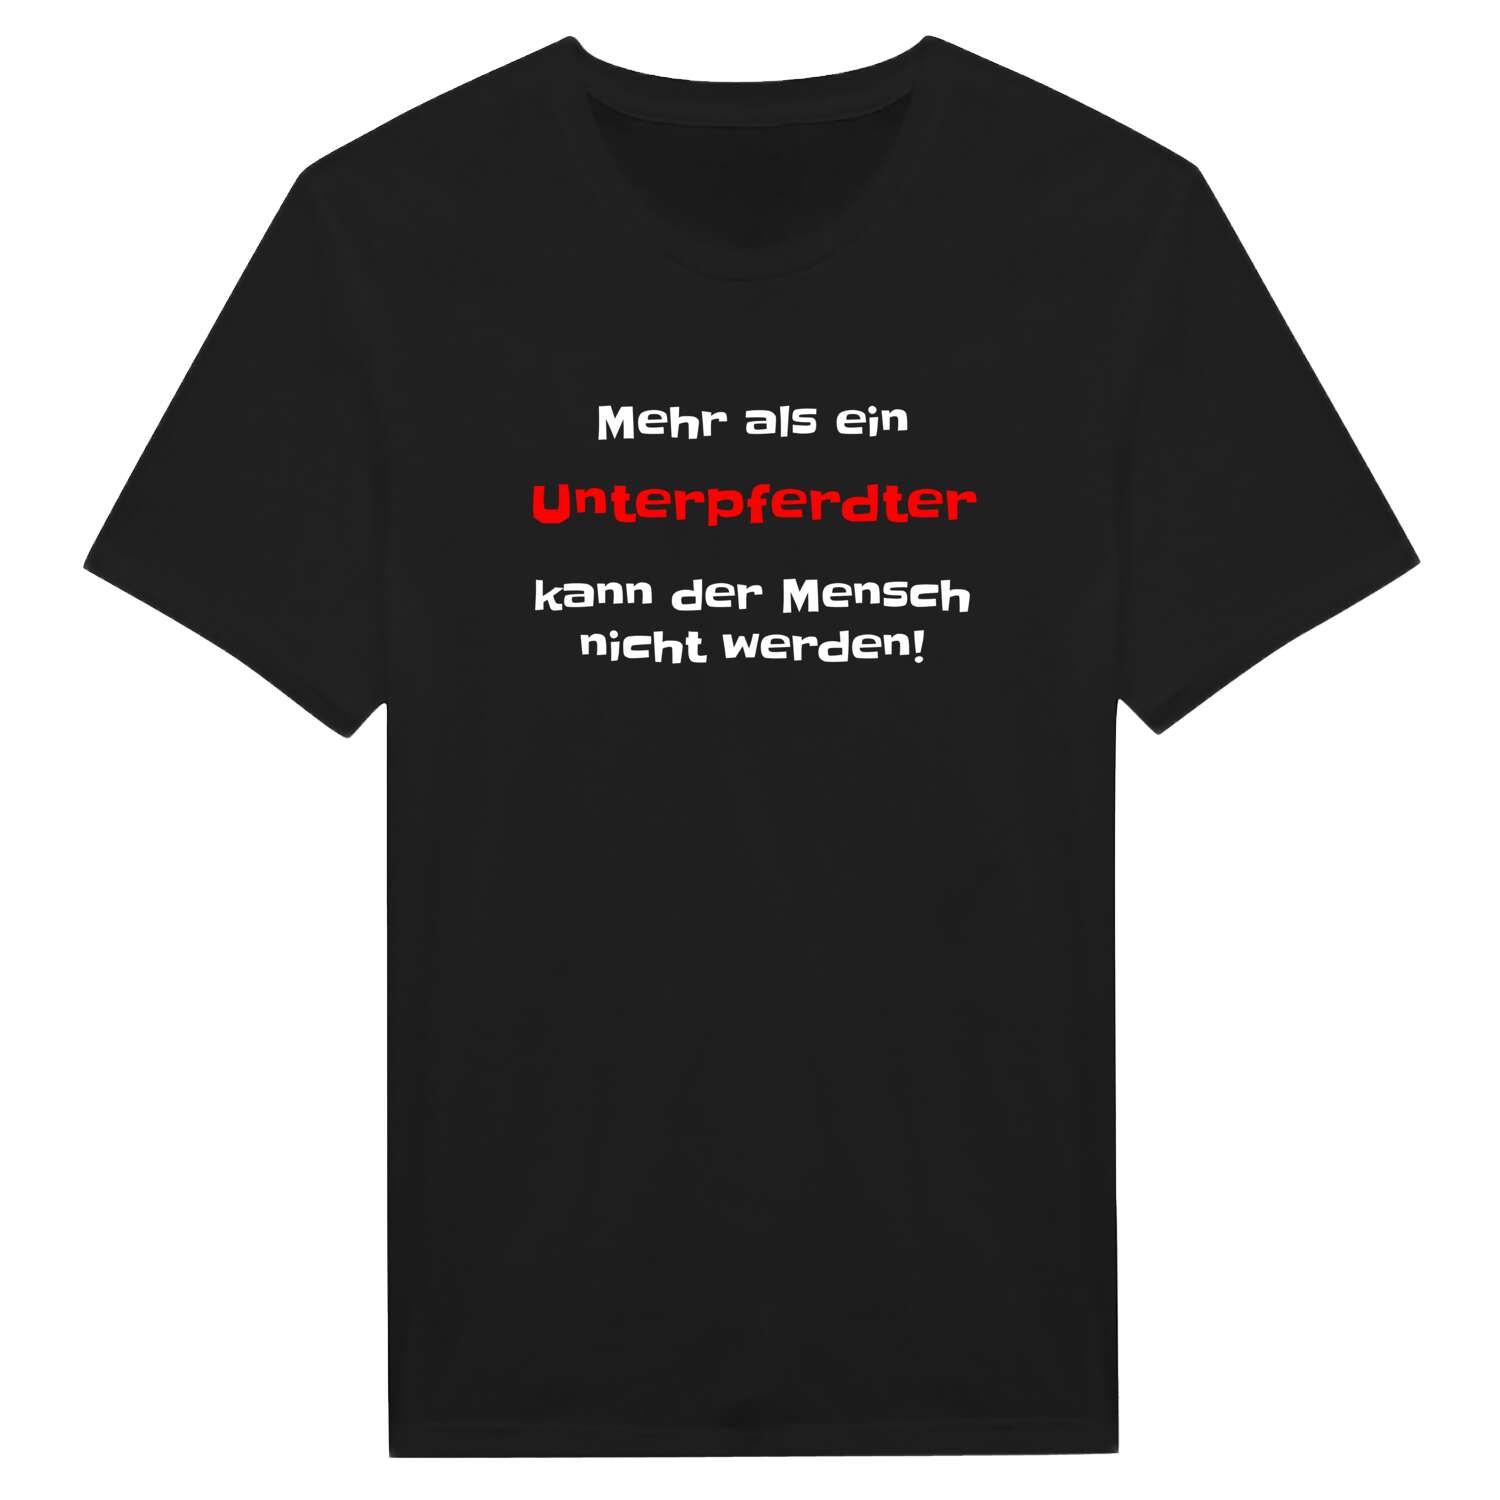 Unterpferdt T-Shirt »Mehr als ein«